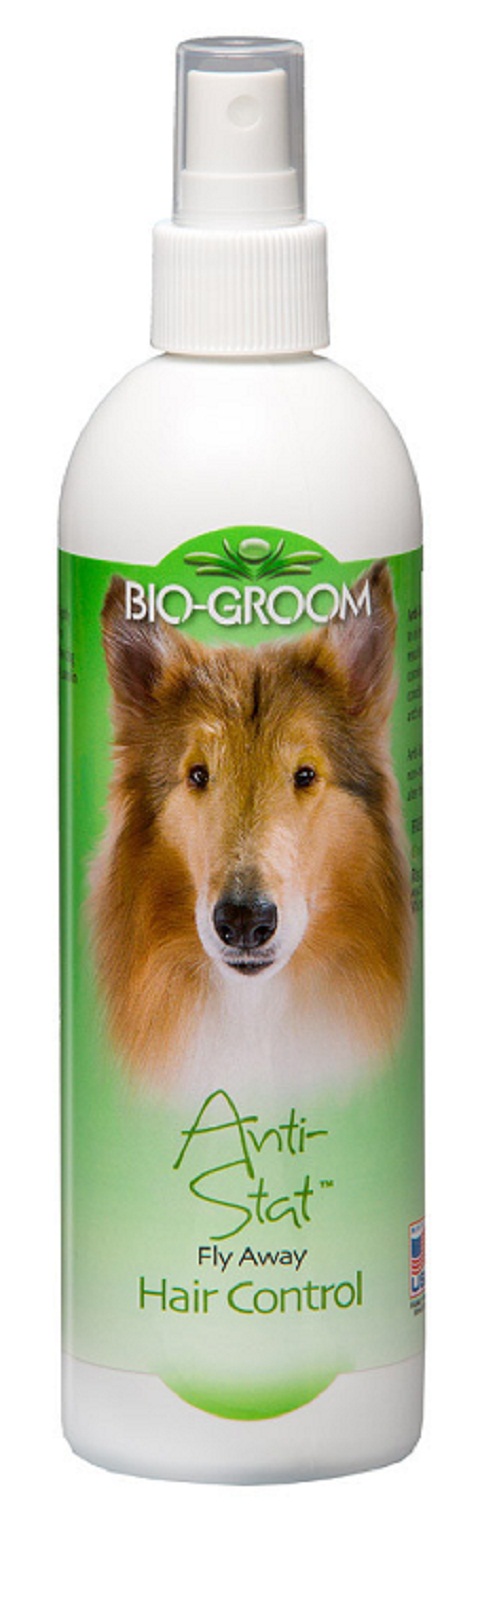 фото Лосьон для собак bio-groom anti-stat антистатический, 355 мл